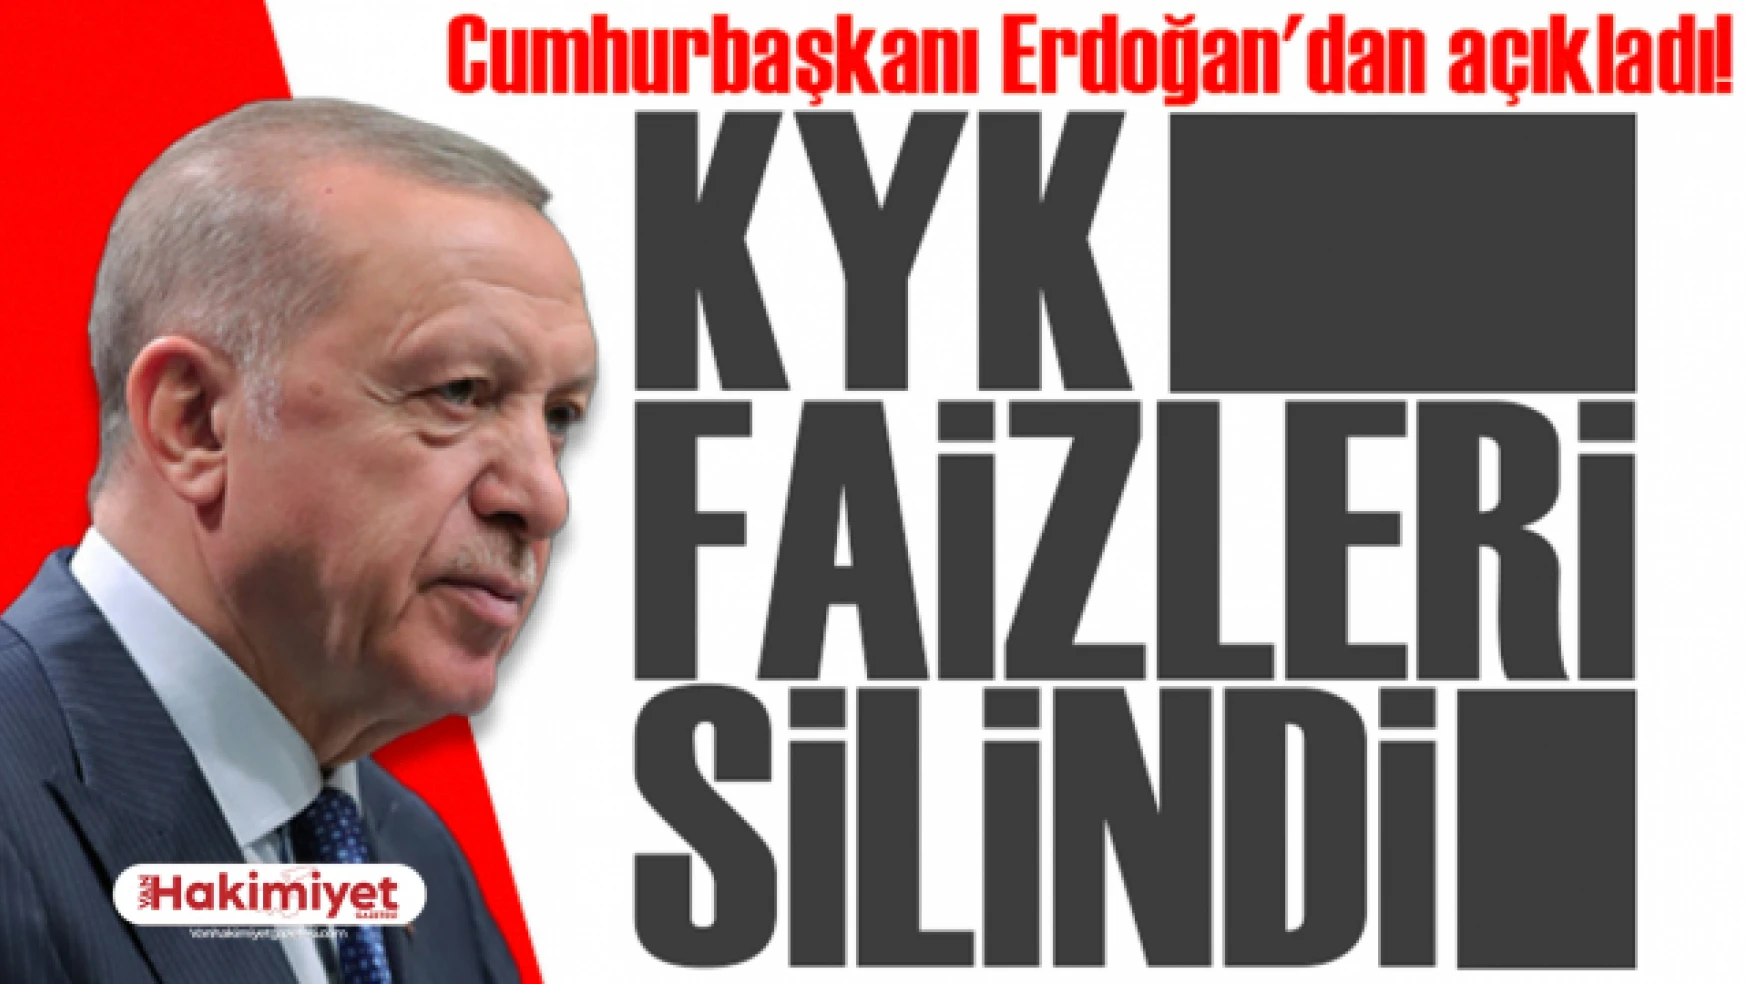 Cumhurbaşkanı Erdoğan'dan açıkladı! KYK faizleri silindi mi?